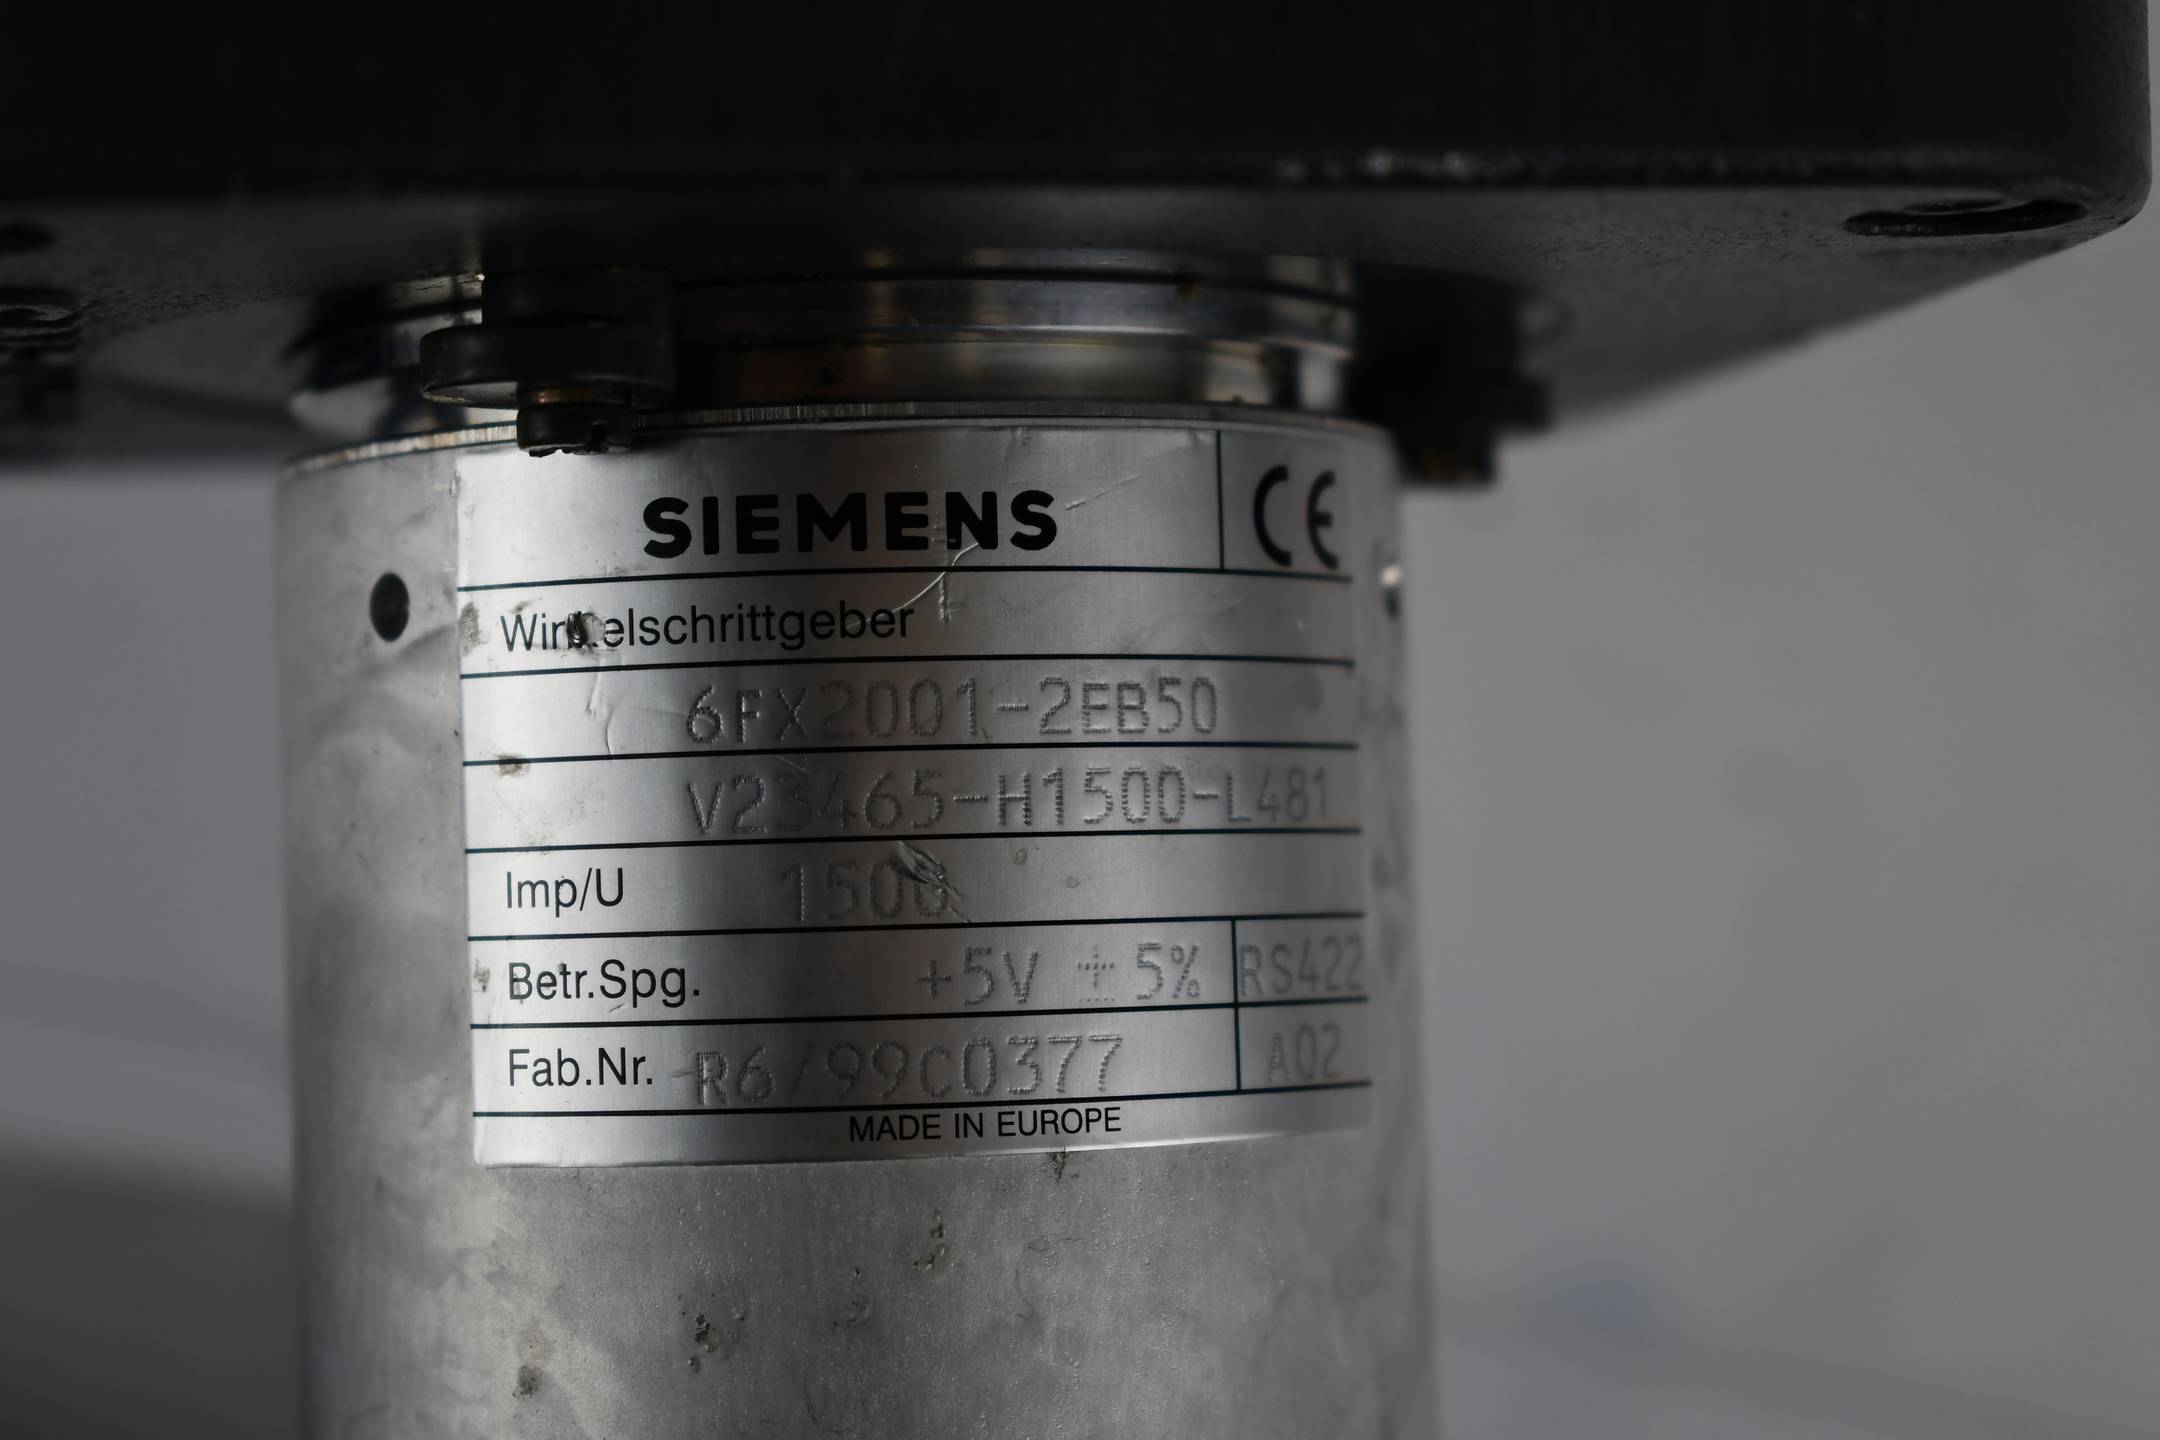 Siemens Motor ZK 600V 1FT5066-0AG71-1-Z ( 1FT5 066-0AG71-1 ) inkl. 6FX2001-2EB50